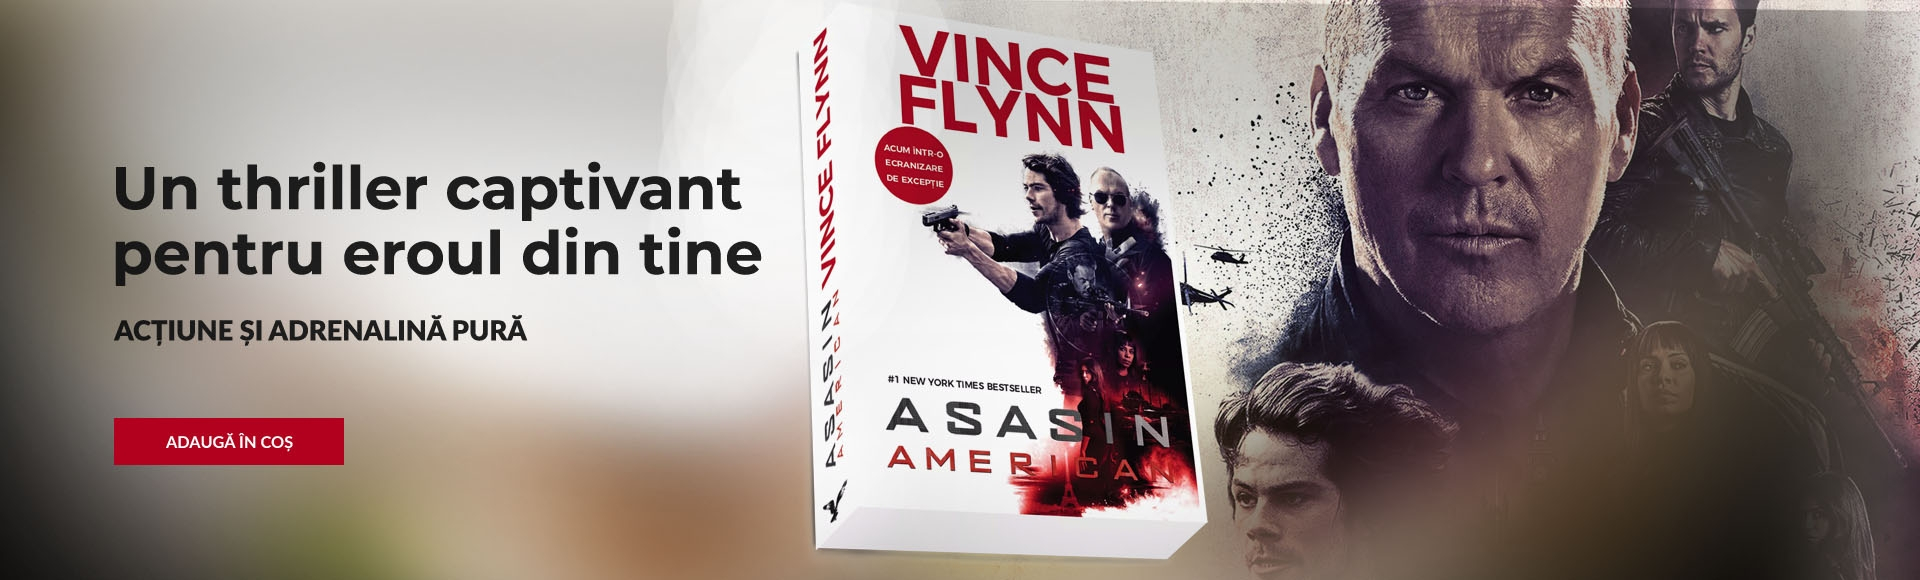 Asasin american | Vince Flynn